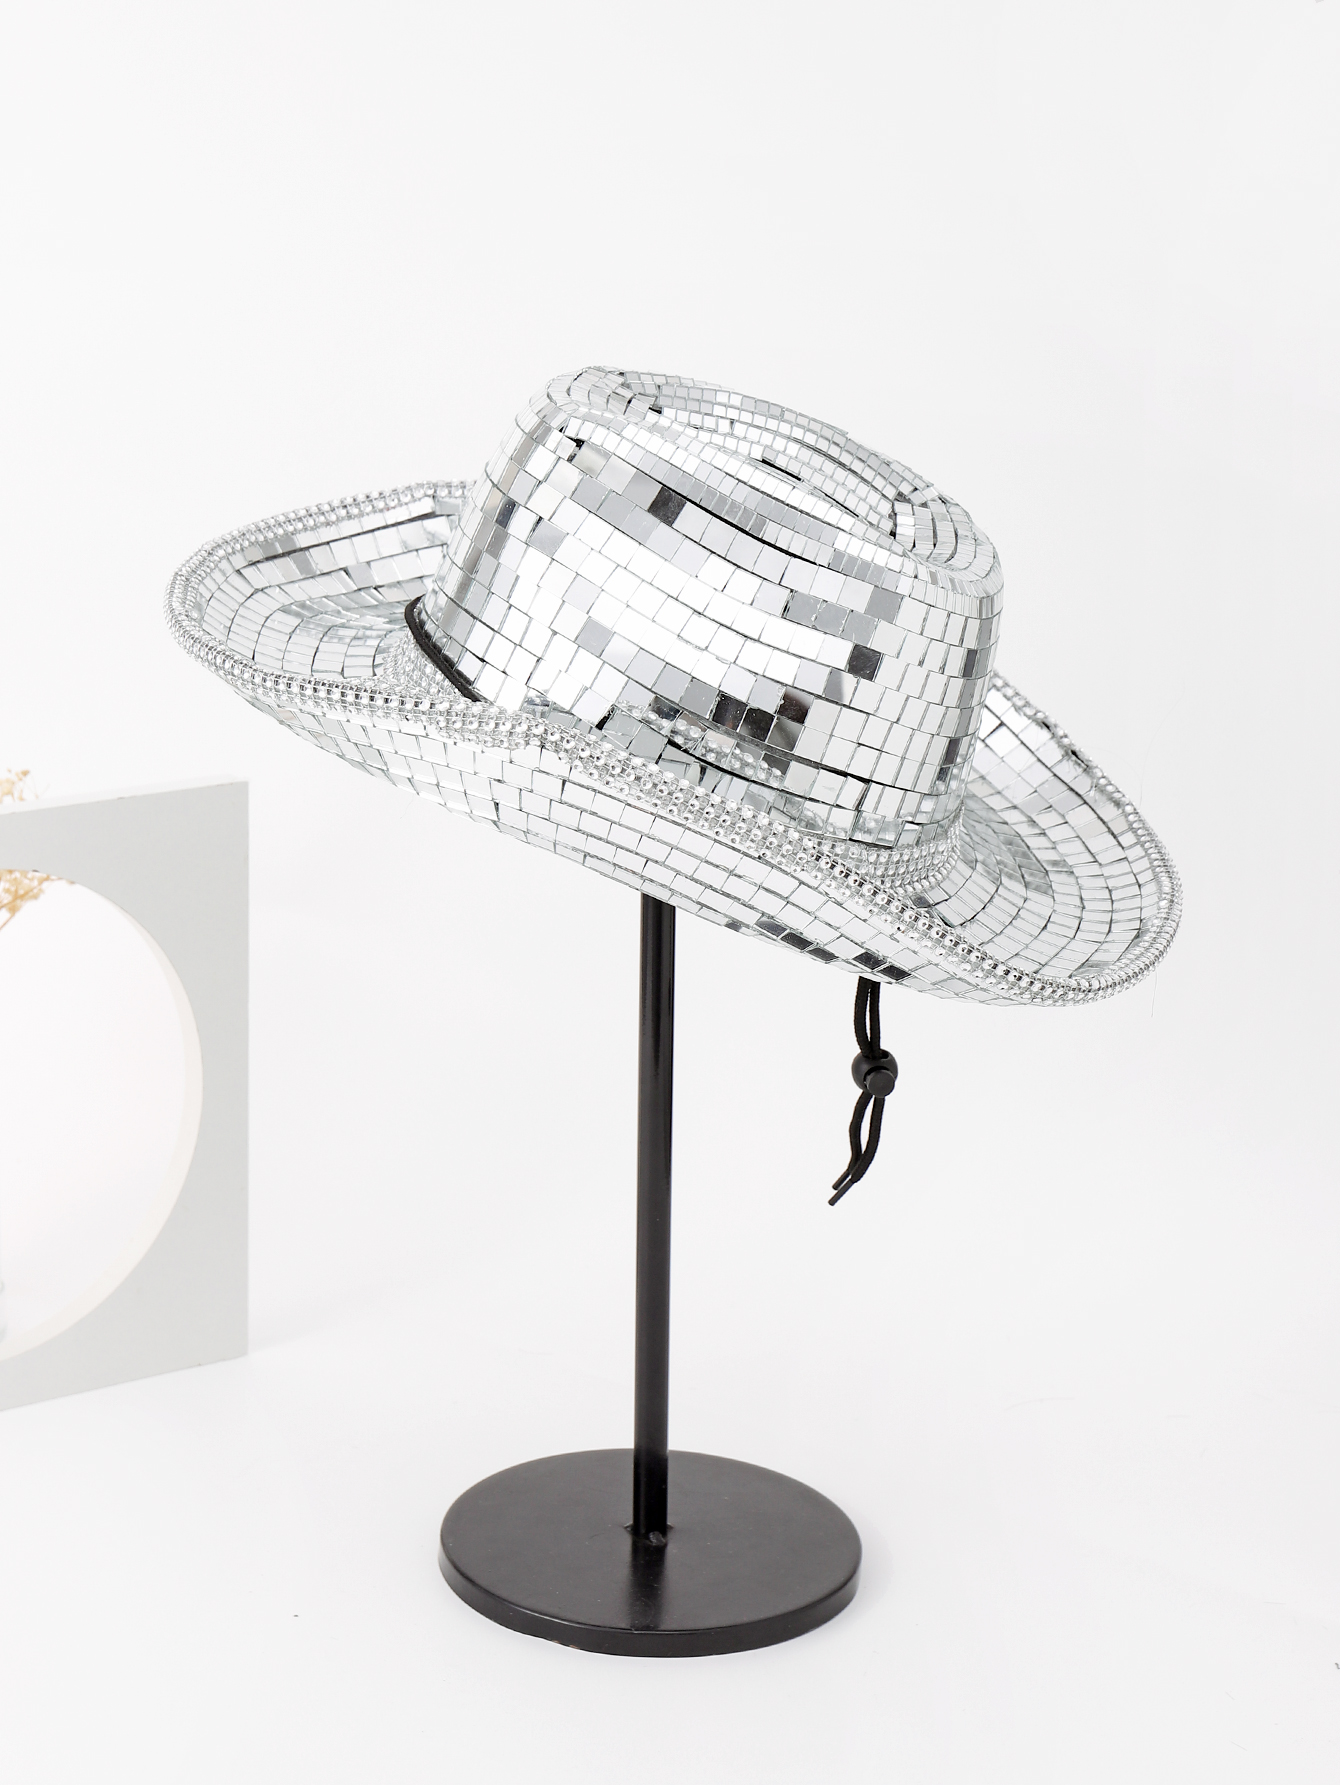 1 шт. мужская новая зеркальная шляпа в стиле диско с кепкой для лазерной рыбалки, серебро ковбойская шляпа с перьями шляпа невесты ковбойская шляпа для девичника искусственная шляпа для невесты ковбойская шляпа для дискотеки